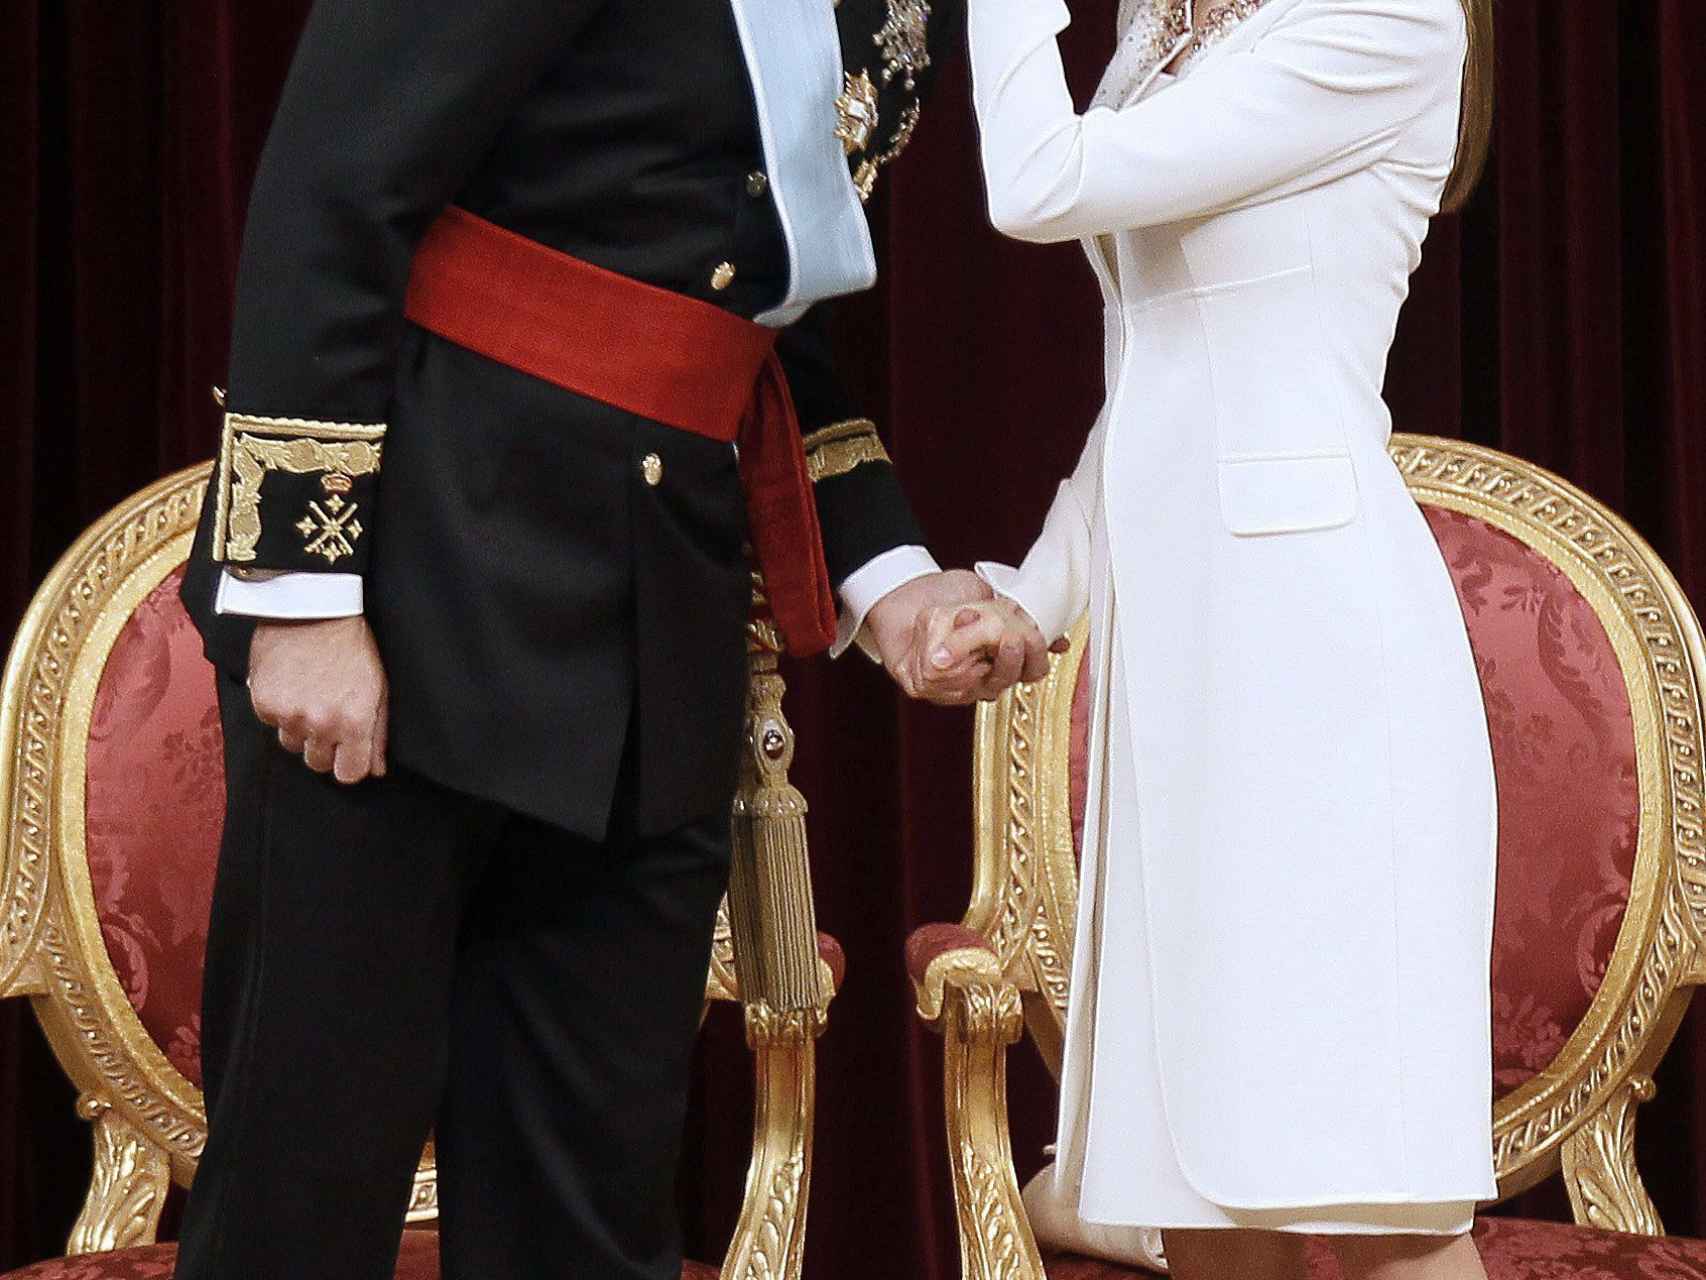 La proclamación de Felipe VI en junio de 2014 marcó un punto de inflexión en la reina Letizia.